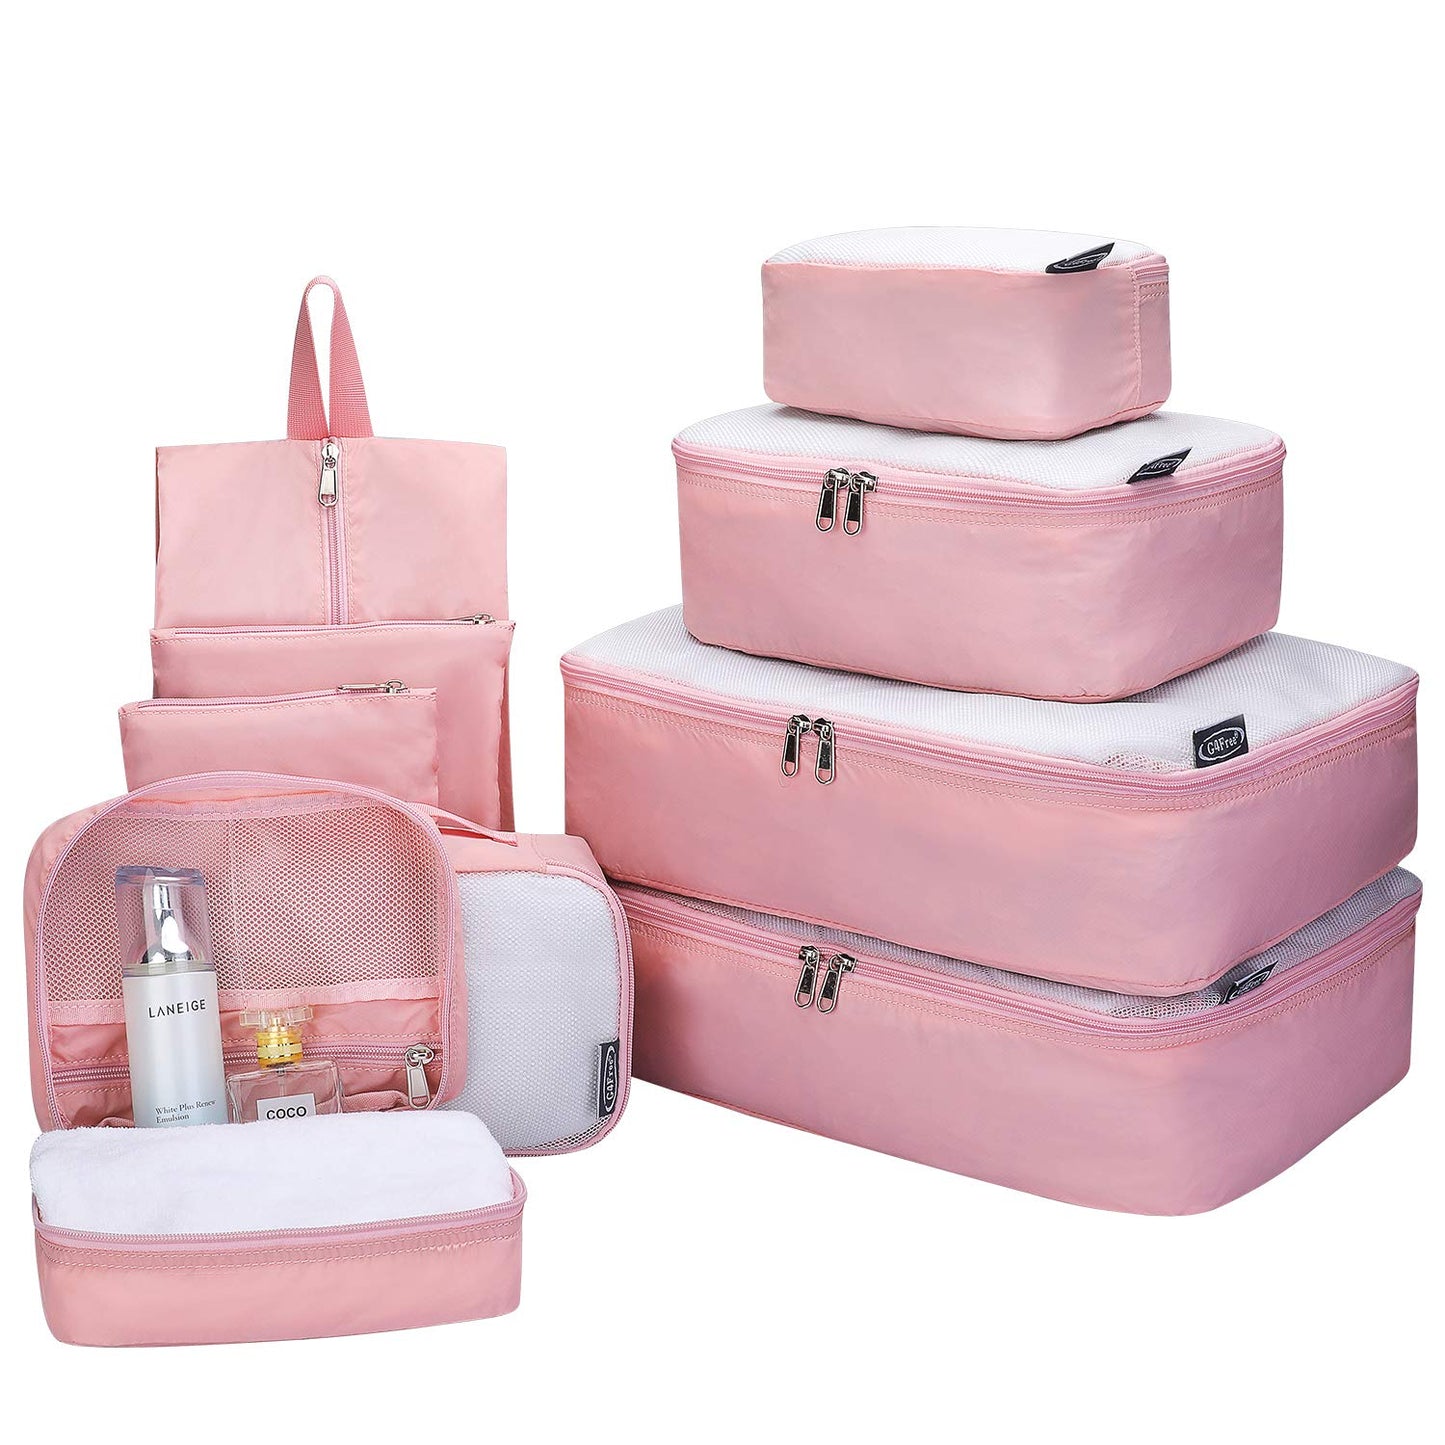 9 set Packing Cubes -G4Free Mesh Travel Luggage Bag Set Packing Organizer